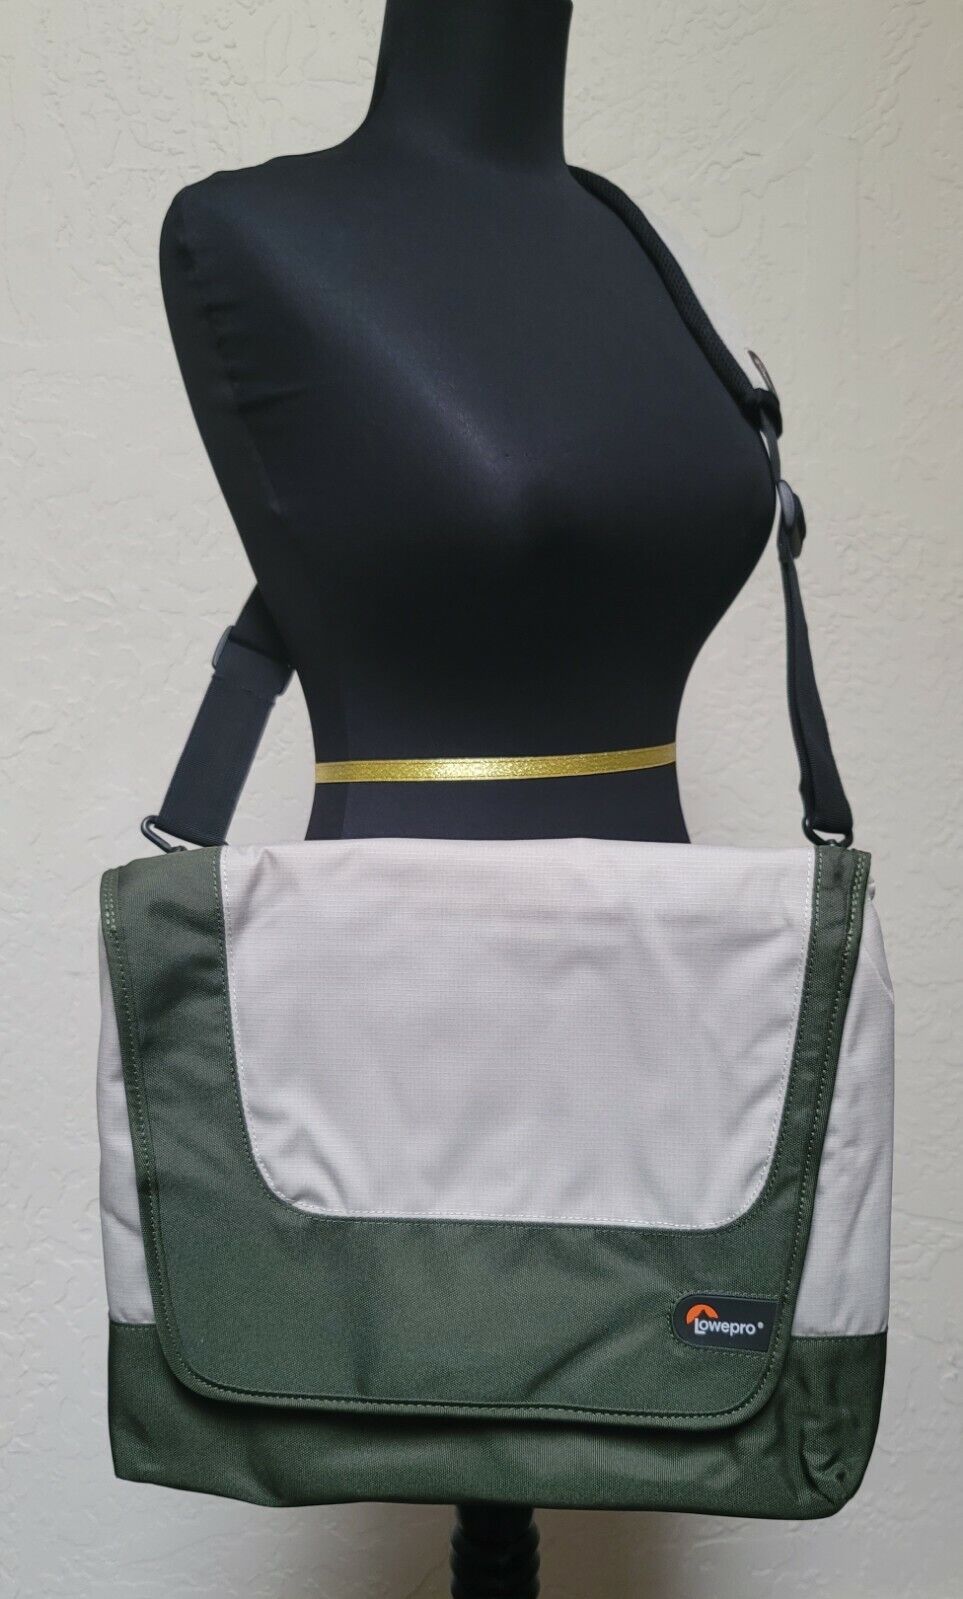 Lowepro Padded Green/Beige For 14" Laptop Shoulder Bag/Case W/Adjustable Strap